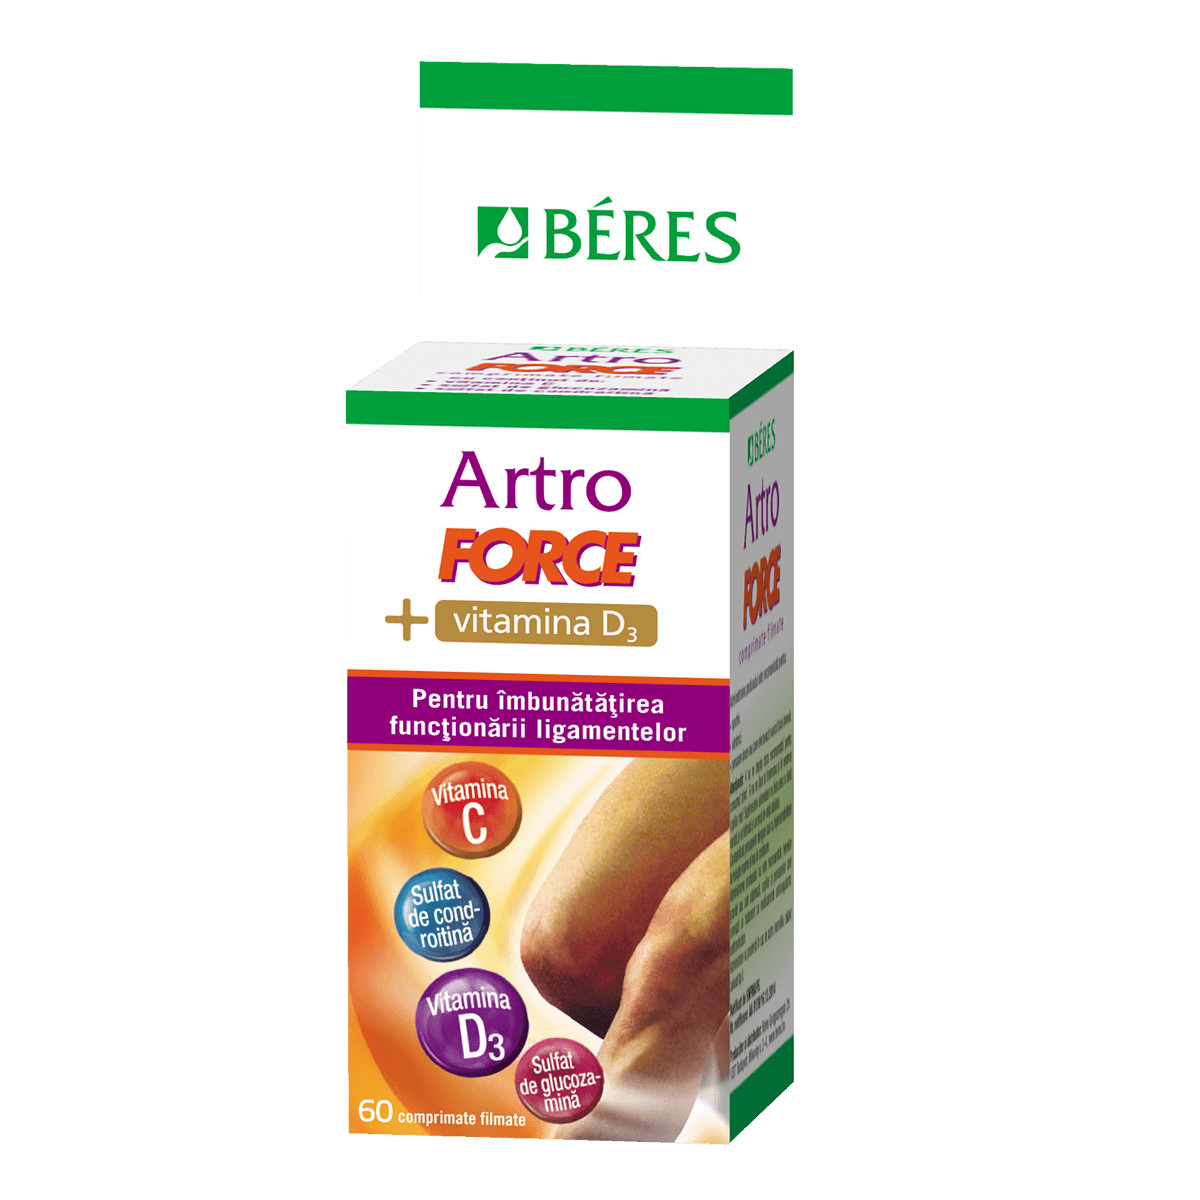 ArtroForce + Vitamina D3 - 60 cpr.